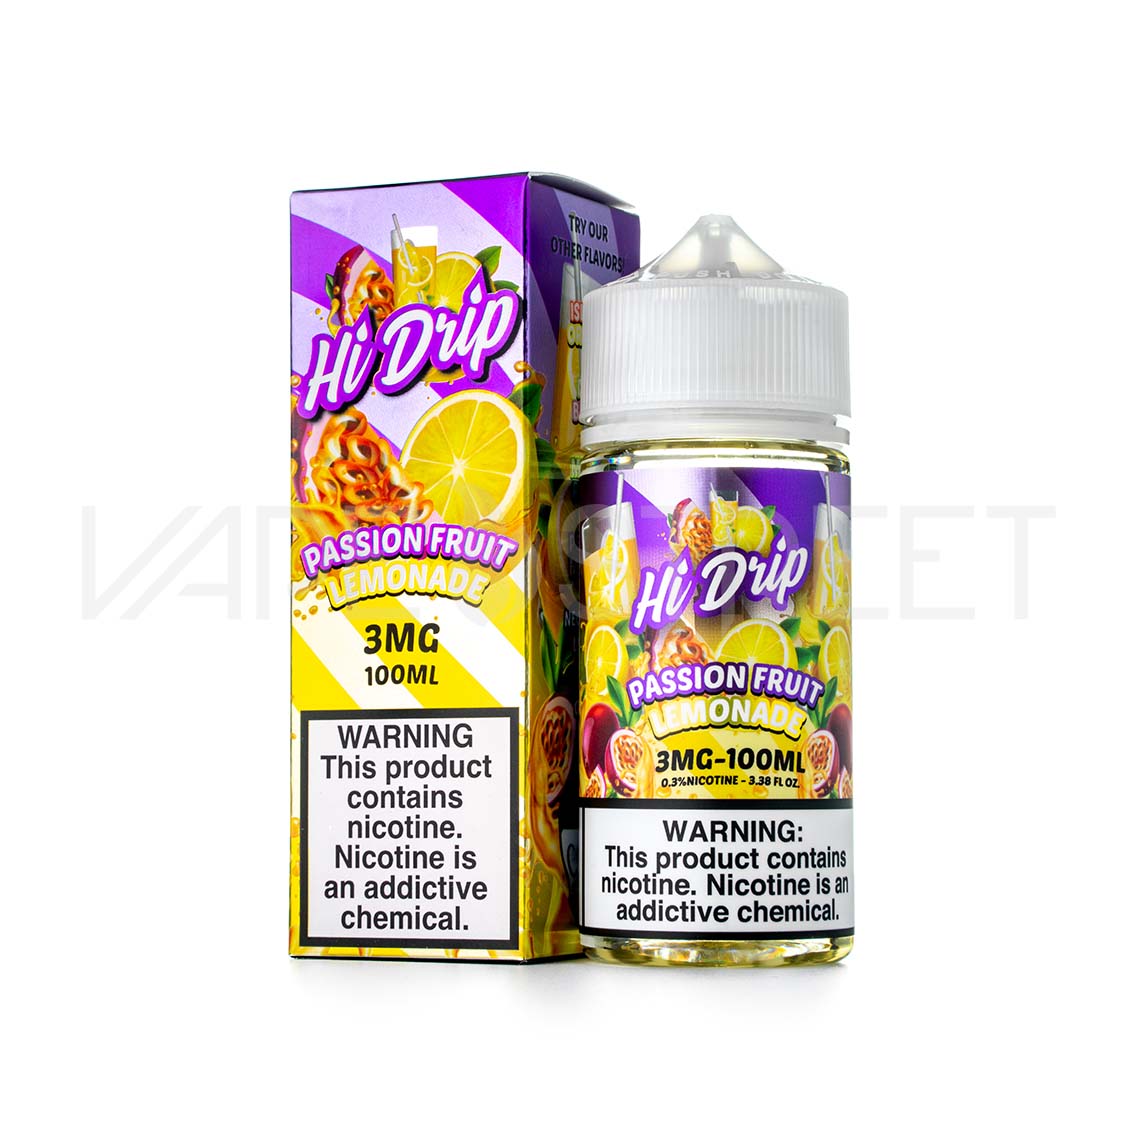 Hi-Drip Passion Fruit Lemonade 100ML